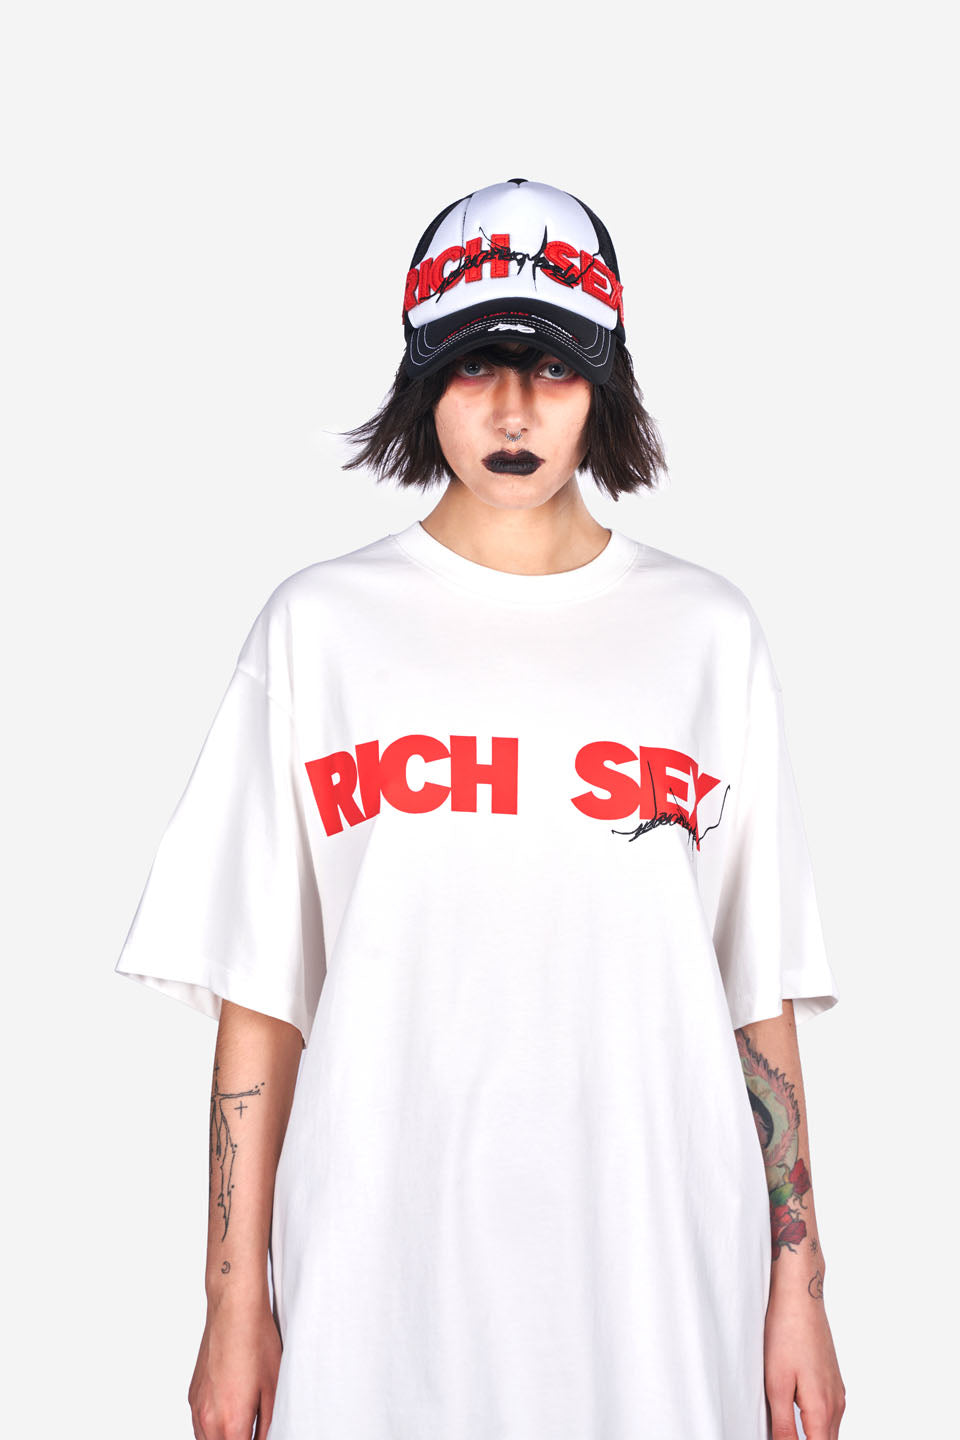 Rich Sex Tee